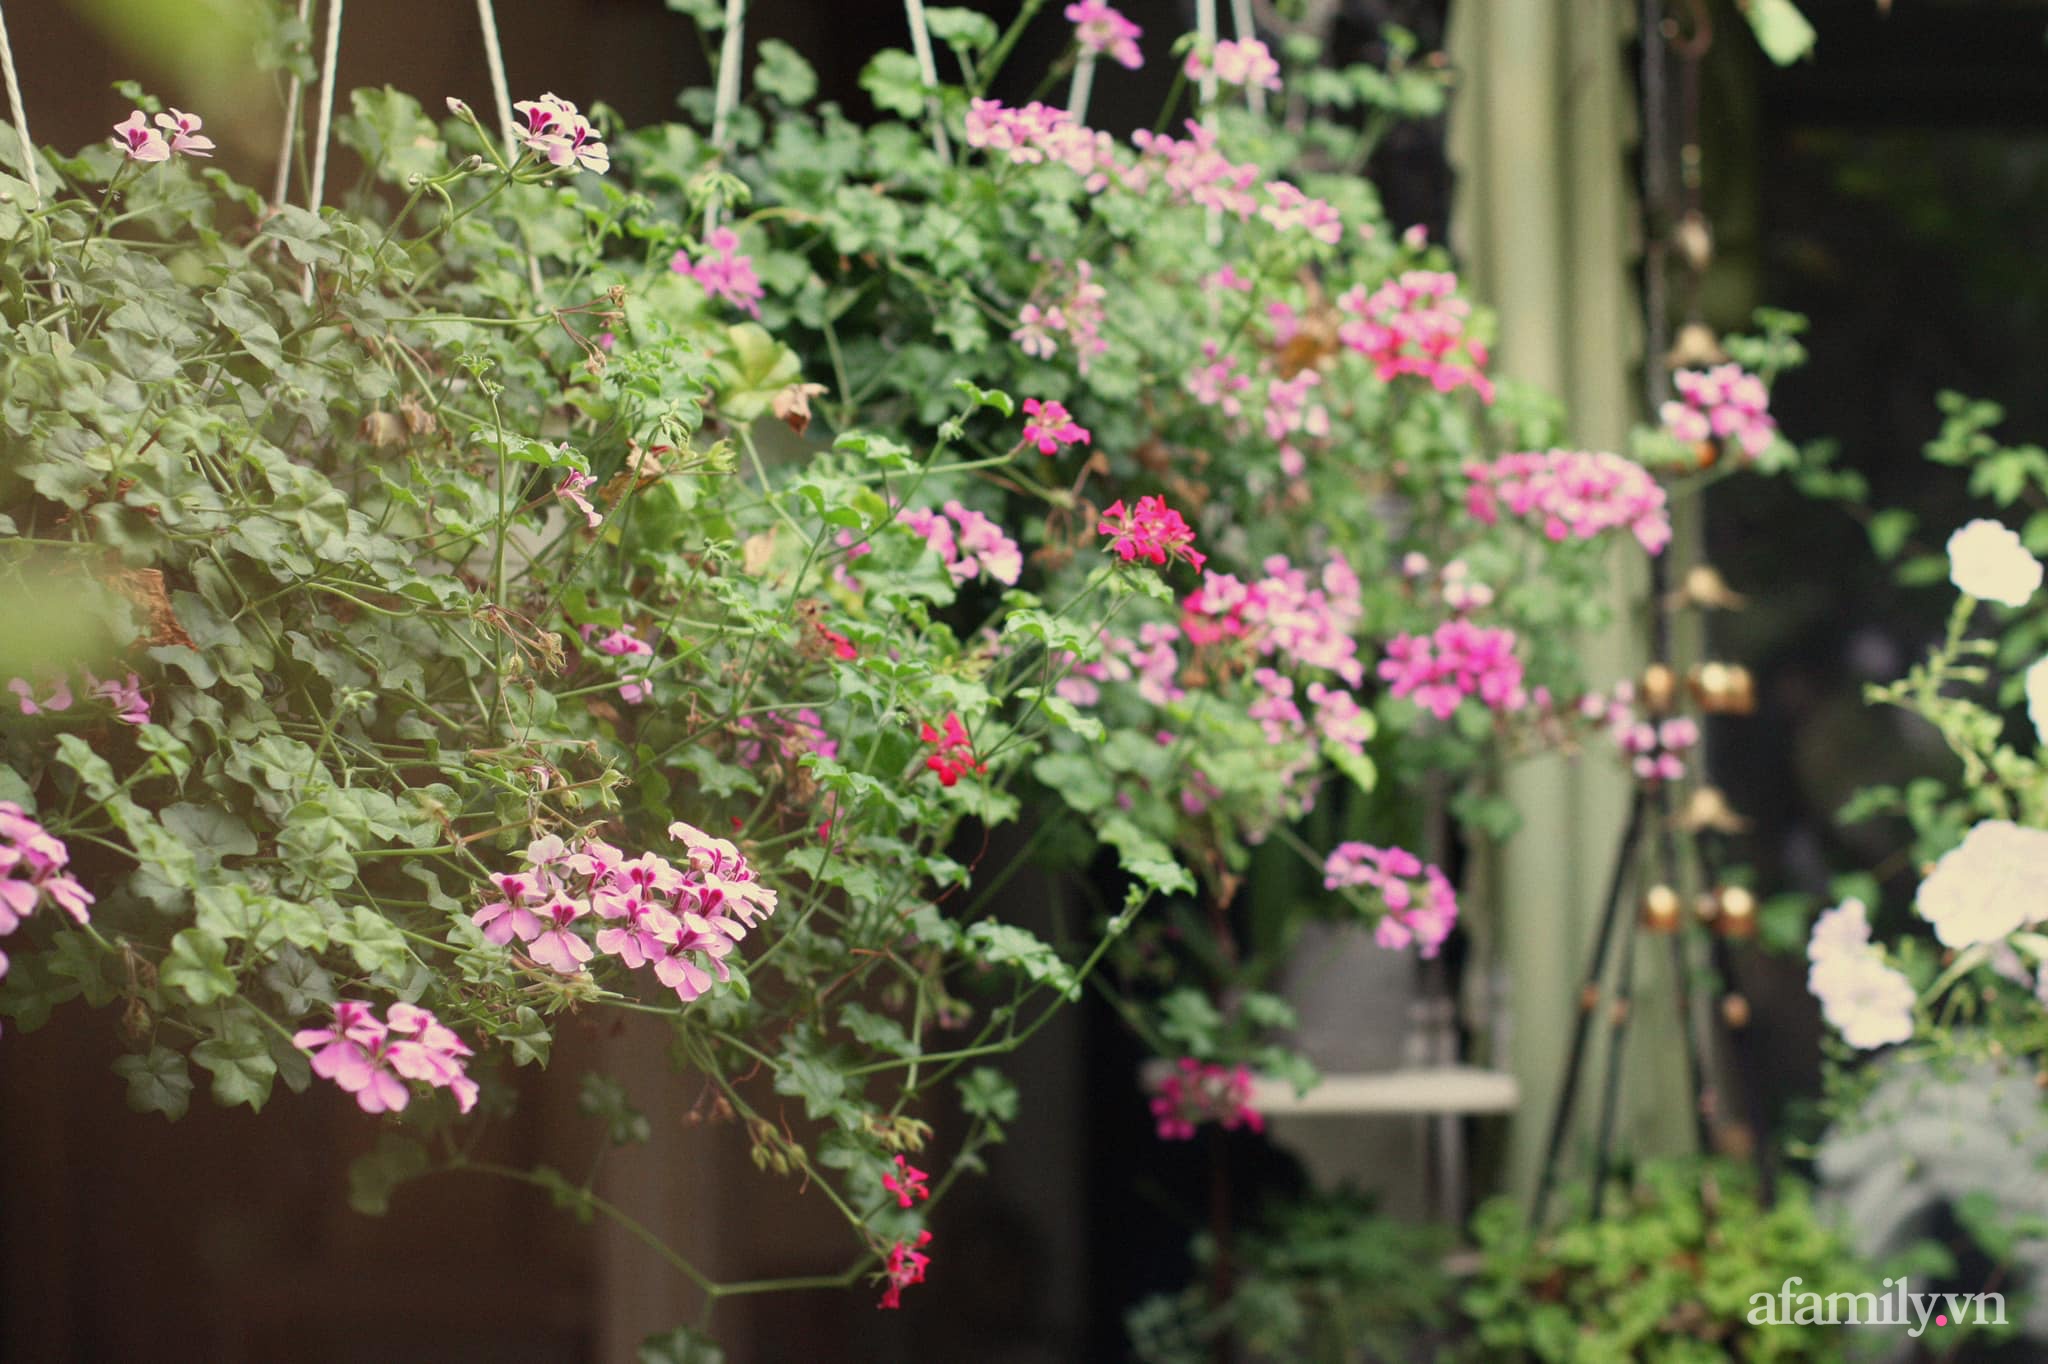 Bí quyết giúp khu vườn tốt tươi, rực rỡ sắc màu hoa lá quanh năm của người phụ nữ đảm Sài Gòn - Ảnh 1.